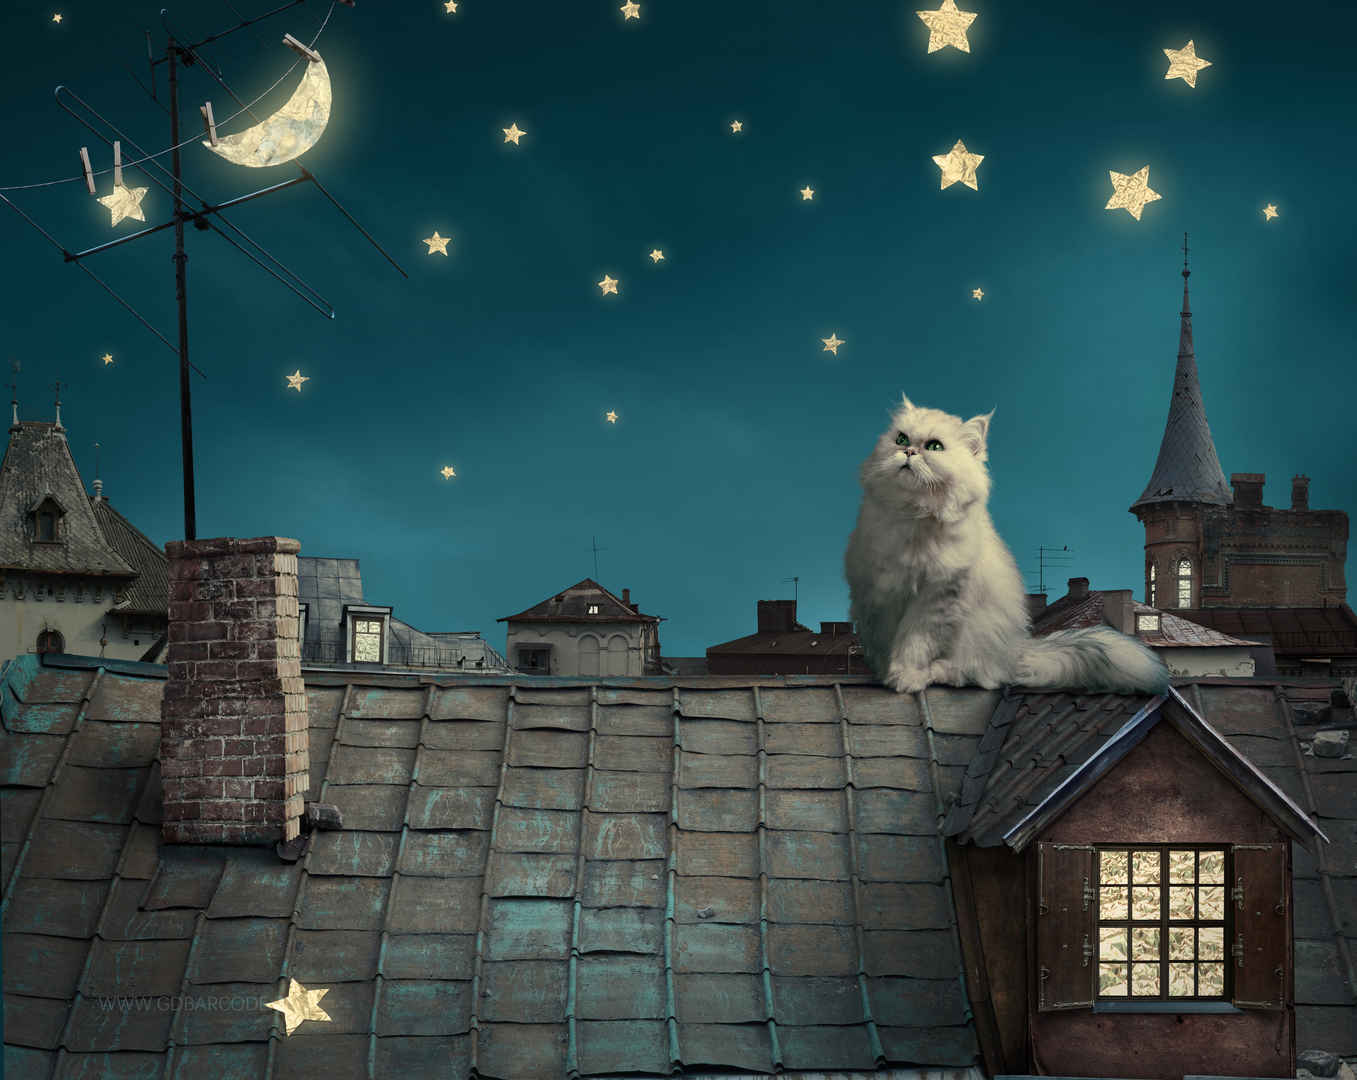 波斯白猫 小猫 童话 幻想 晚上屋顶 房子 天空图片-